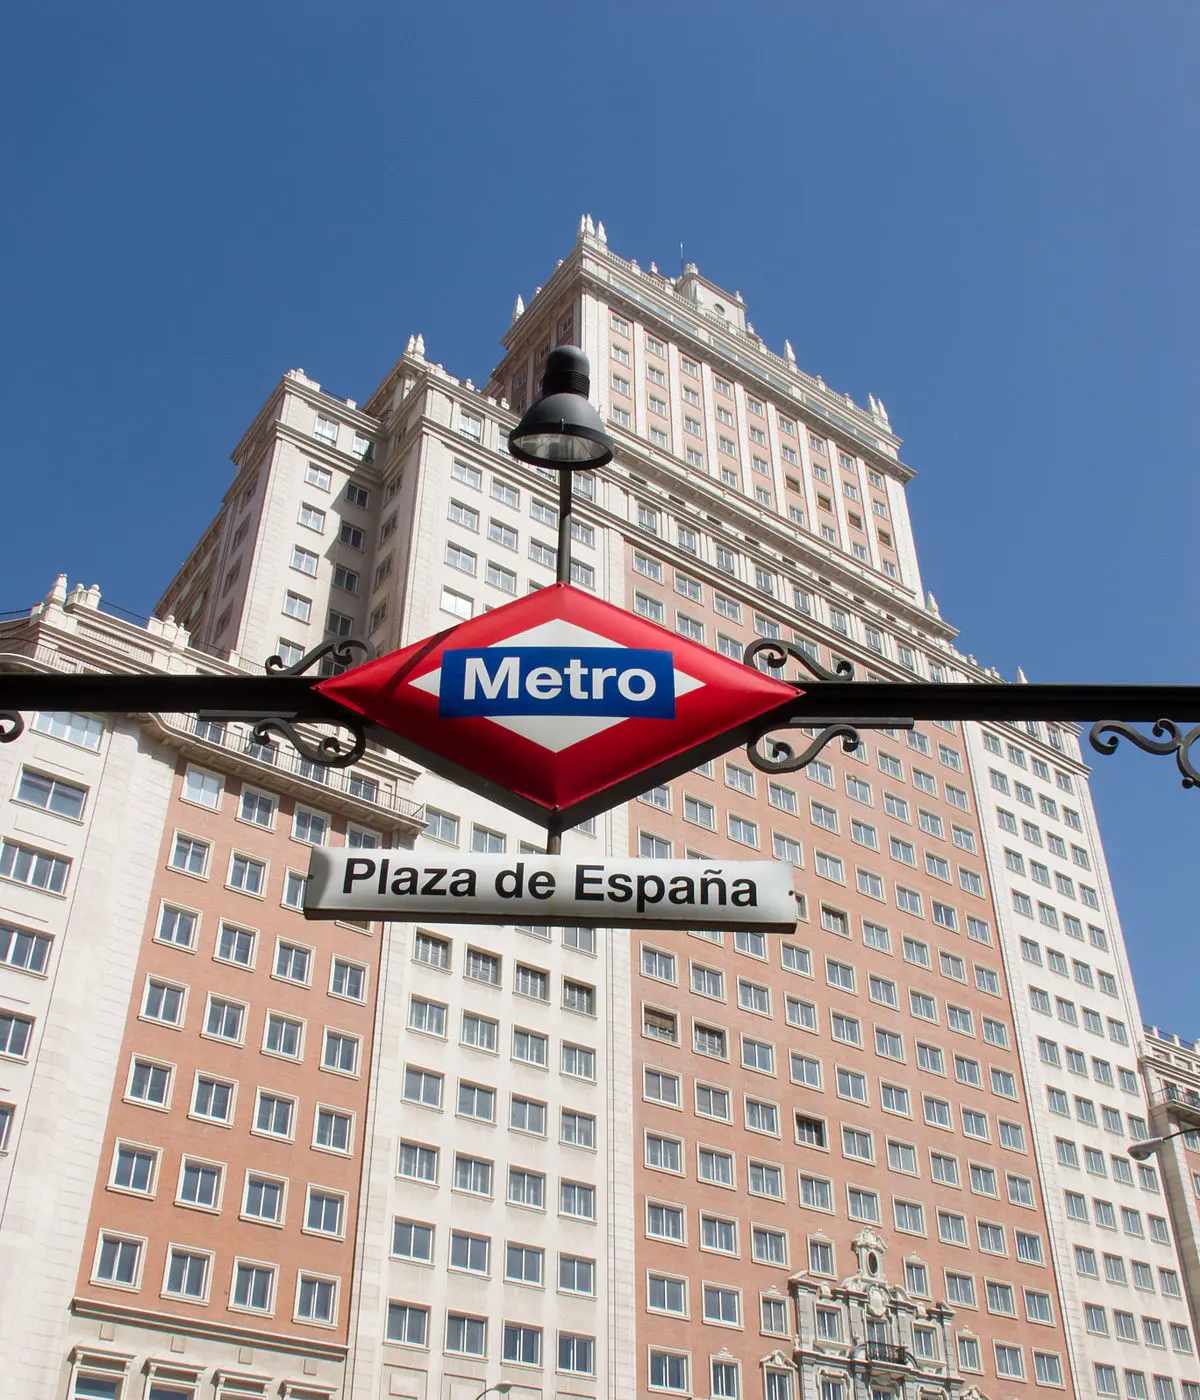 como llegar a prado del rey madrid - Qué líneas de metro pasan por Plaza España Madrid